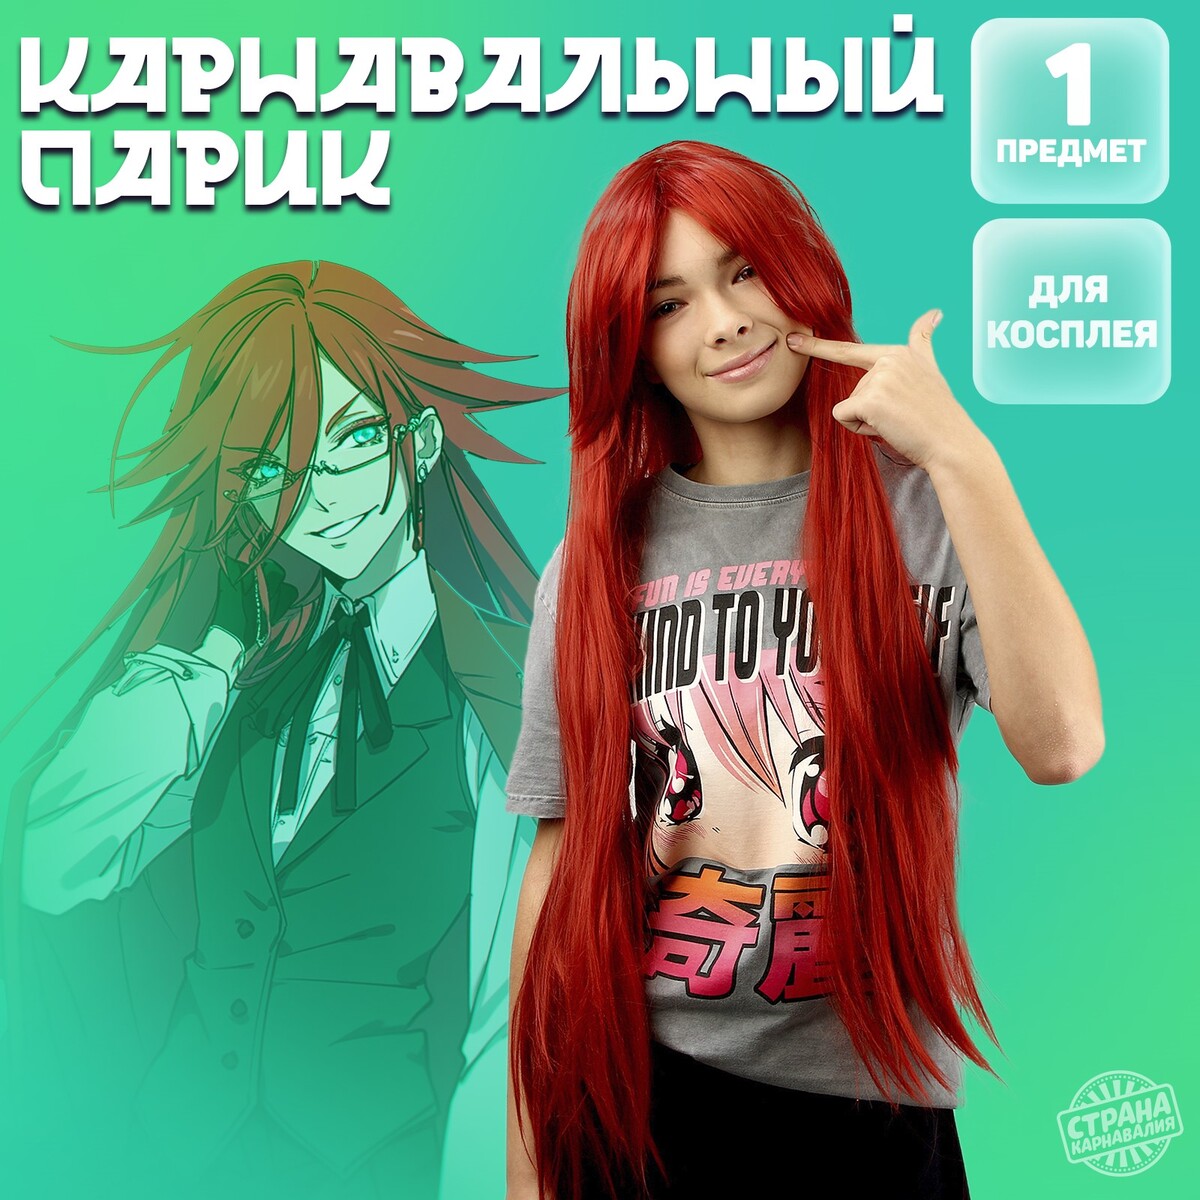 Карнавальный парик парик русалки красный длина 60 см